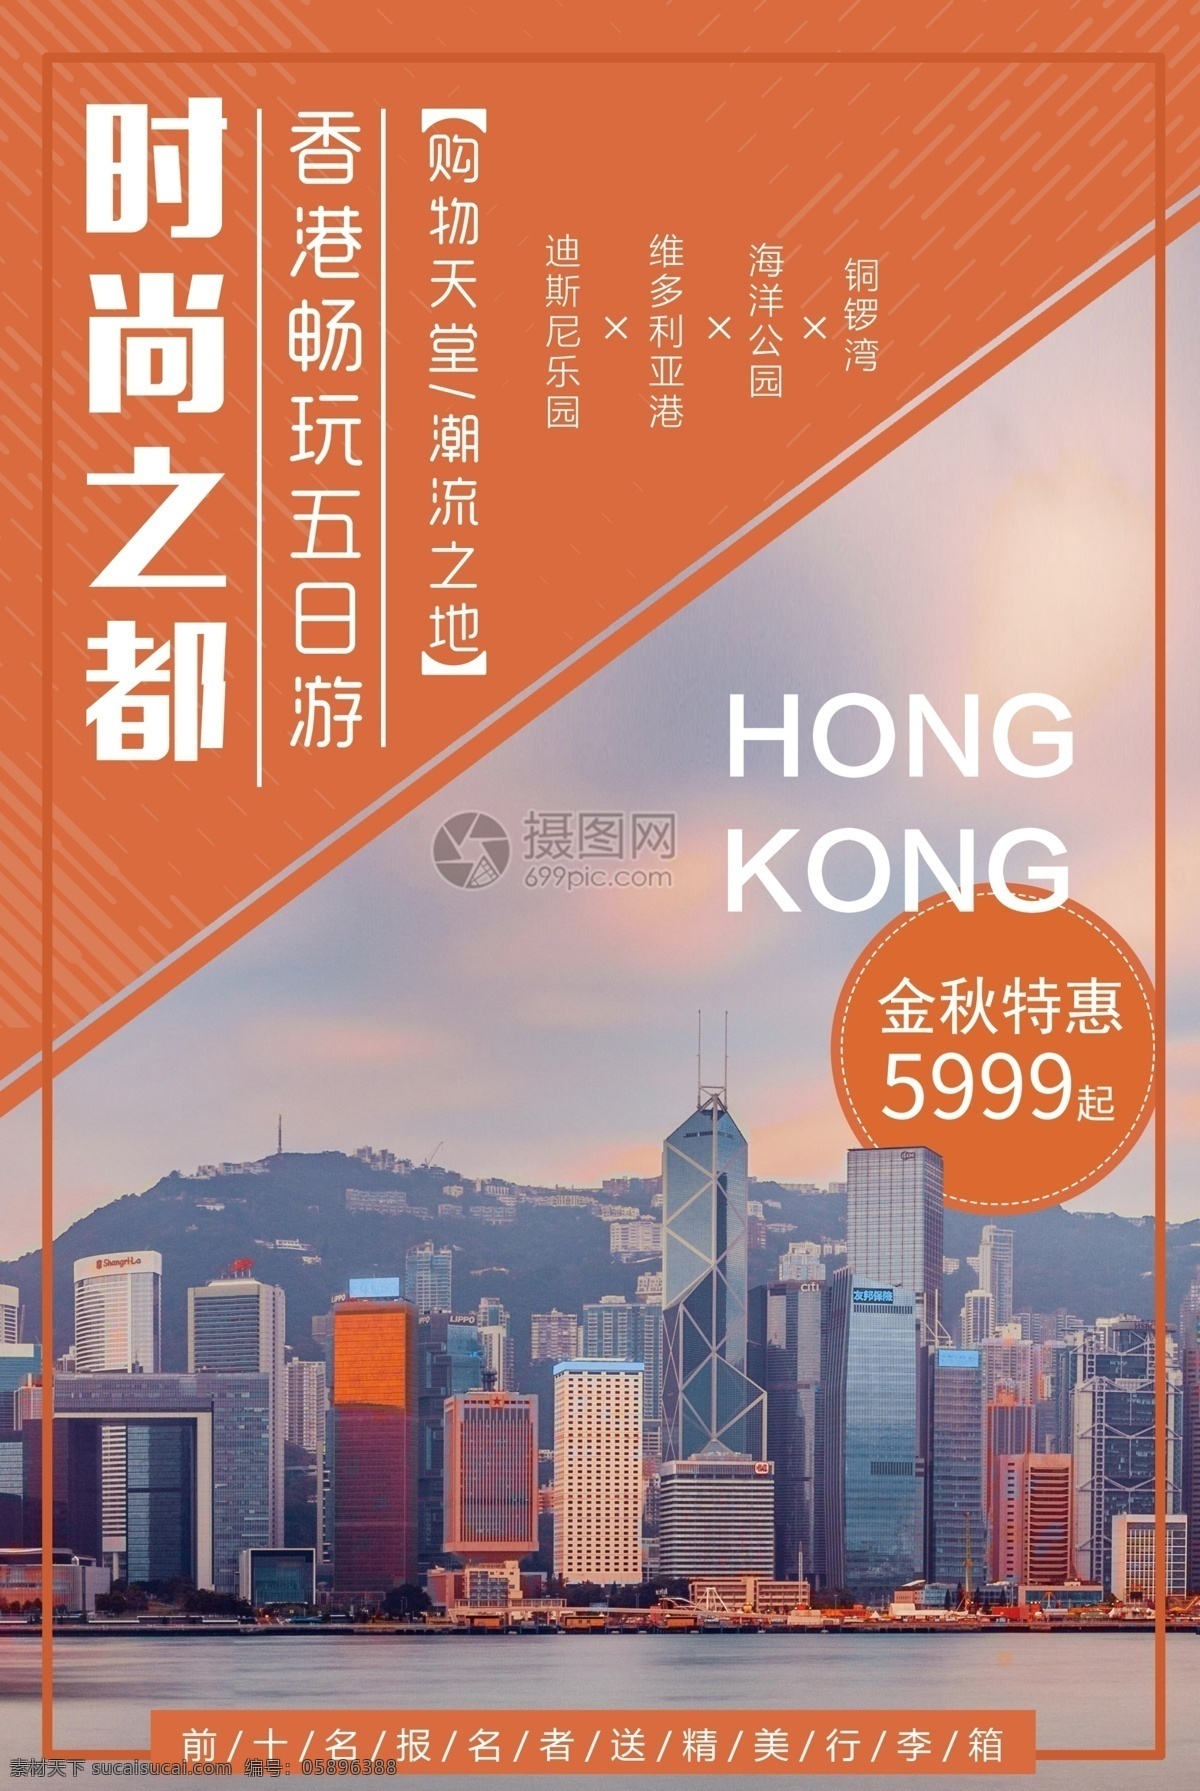 香港旅游海报 旅游季 时尚之都 购物天堂 香港 香港旅游 畅玩 五日游